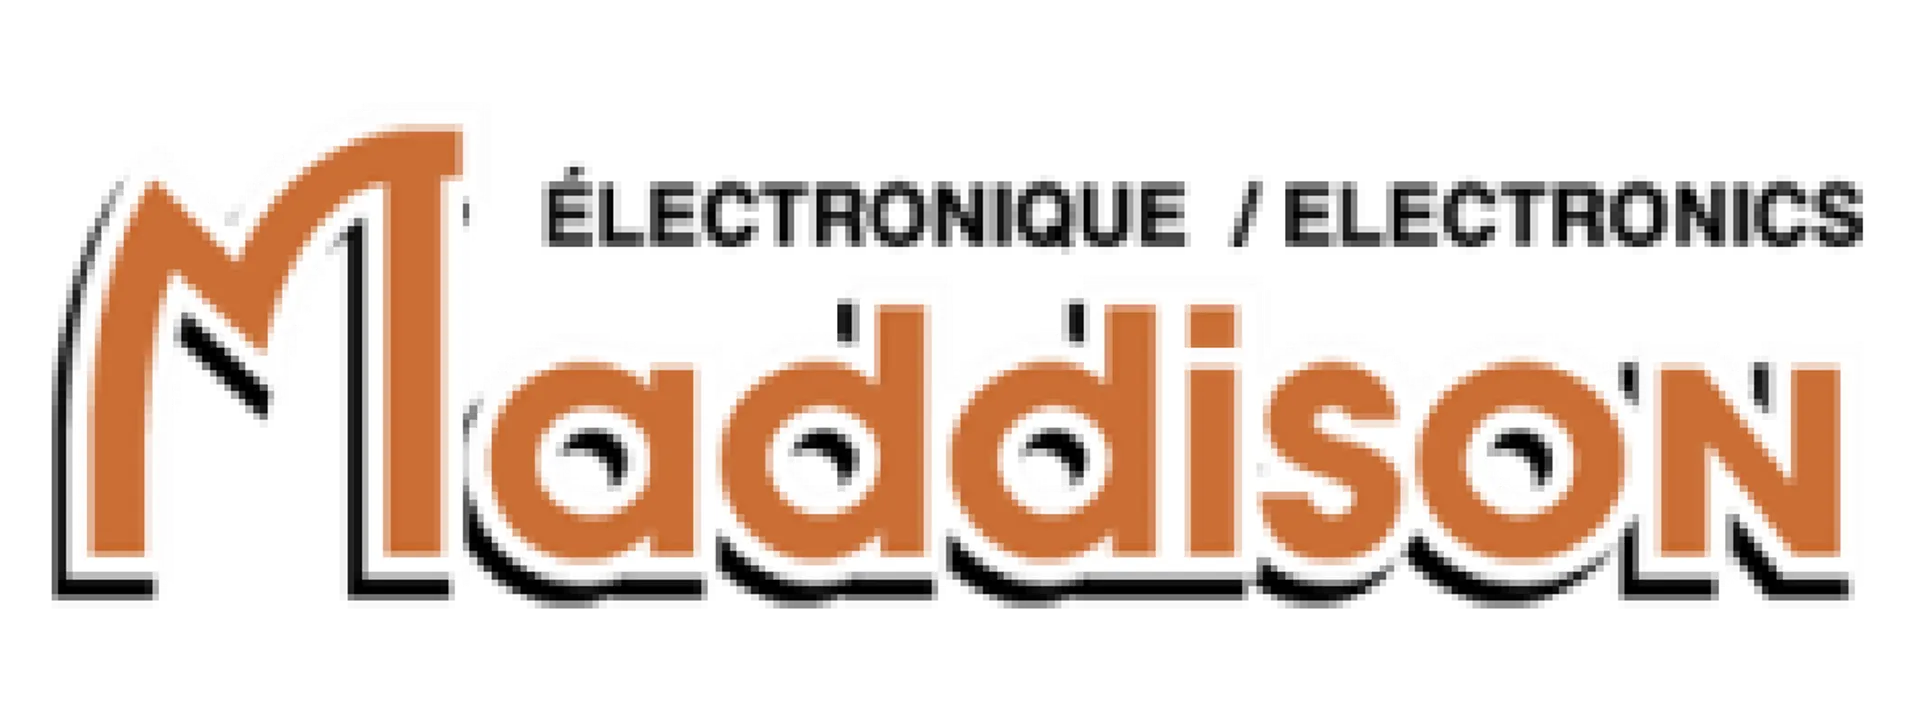 MADDISON ELECTRONIQUE logo de circulaires